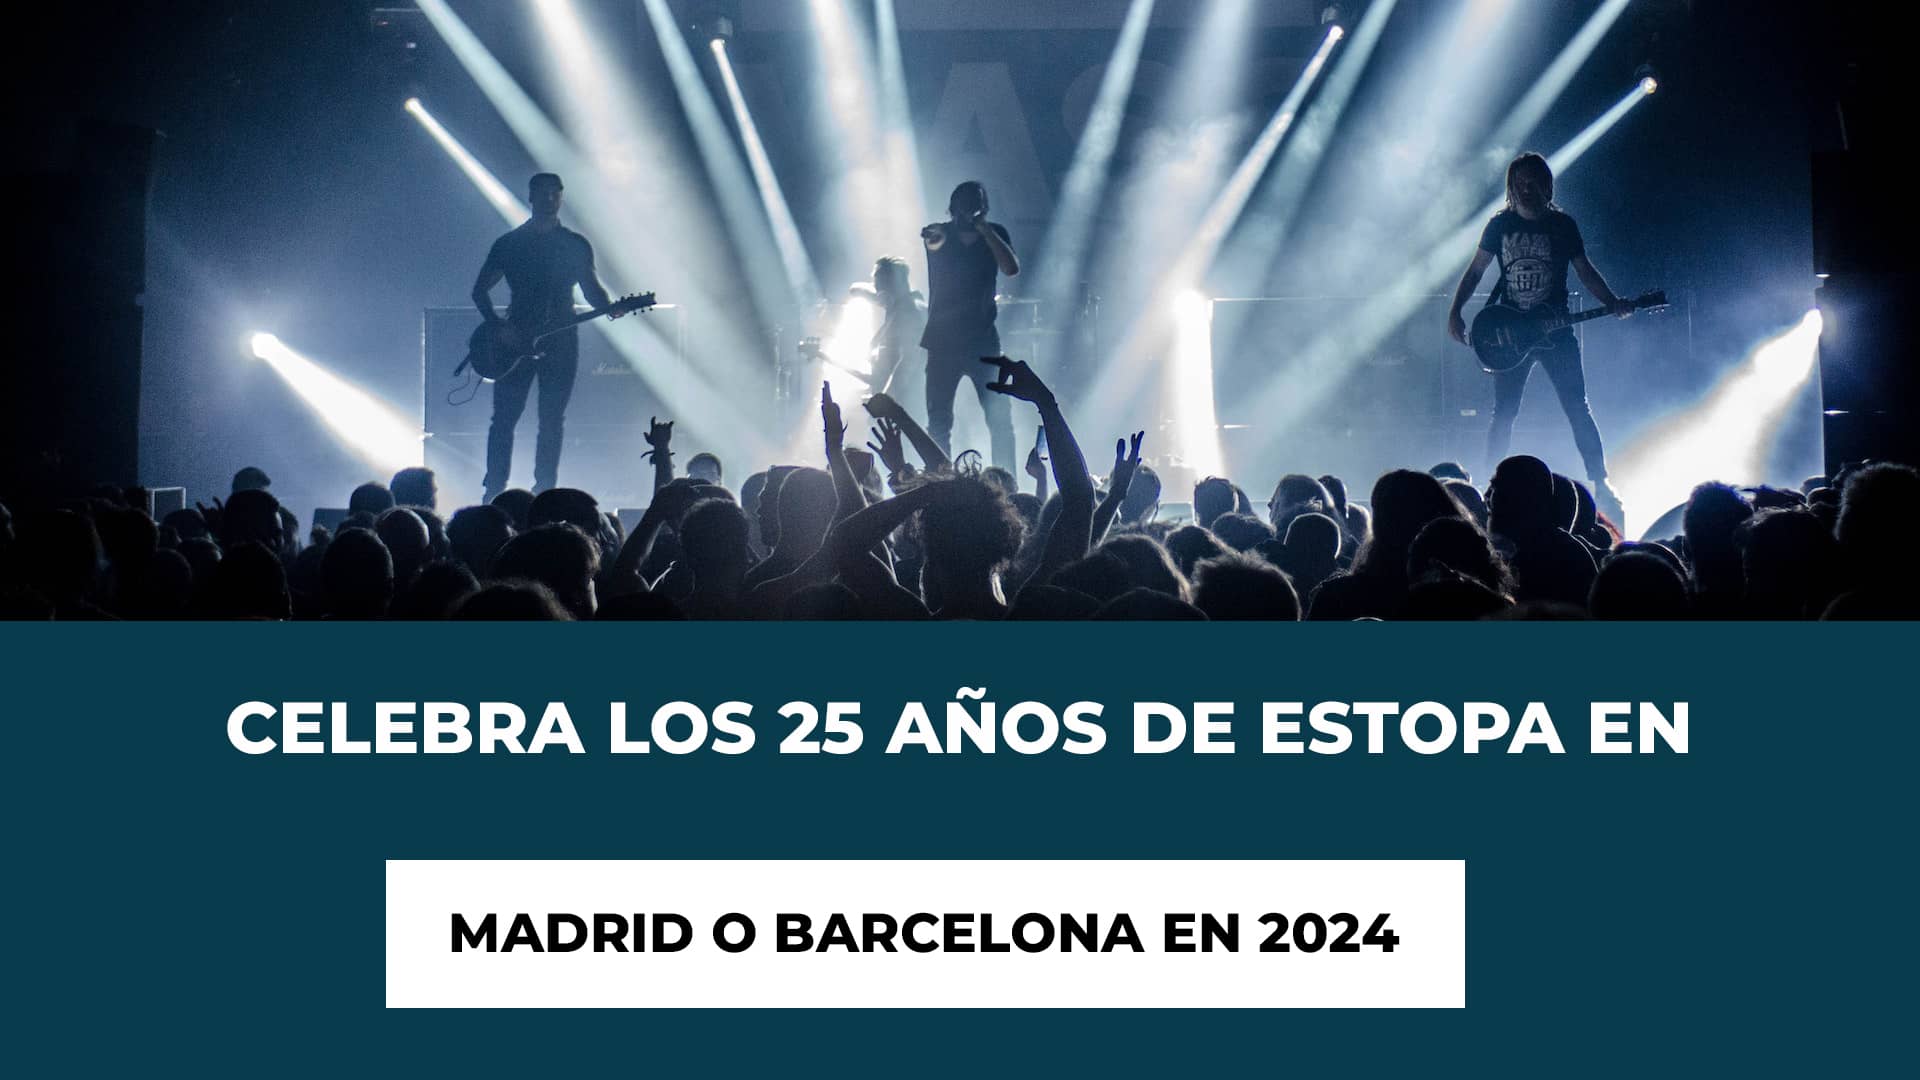 Celebra los 25 años de Estopa en Madrid o Barcelona en 2024 - Detalles de los Conciertos - Fechas - Recintos - Cuando salen las entradas